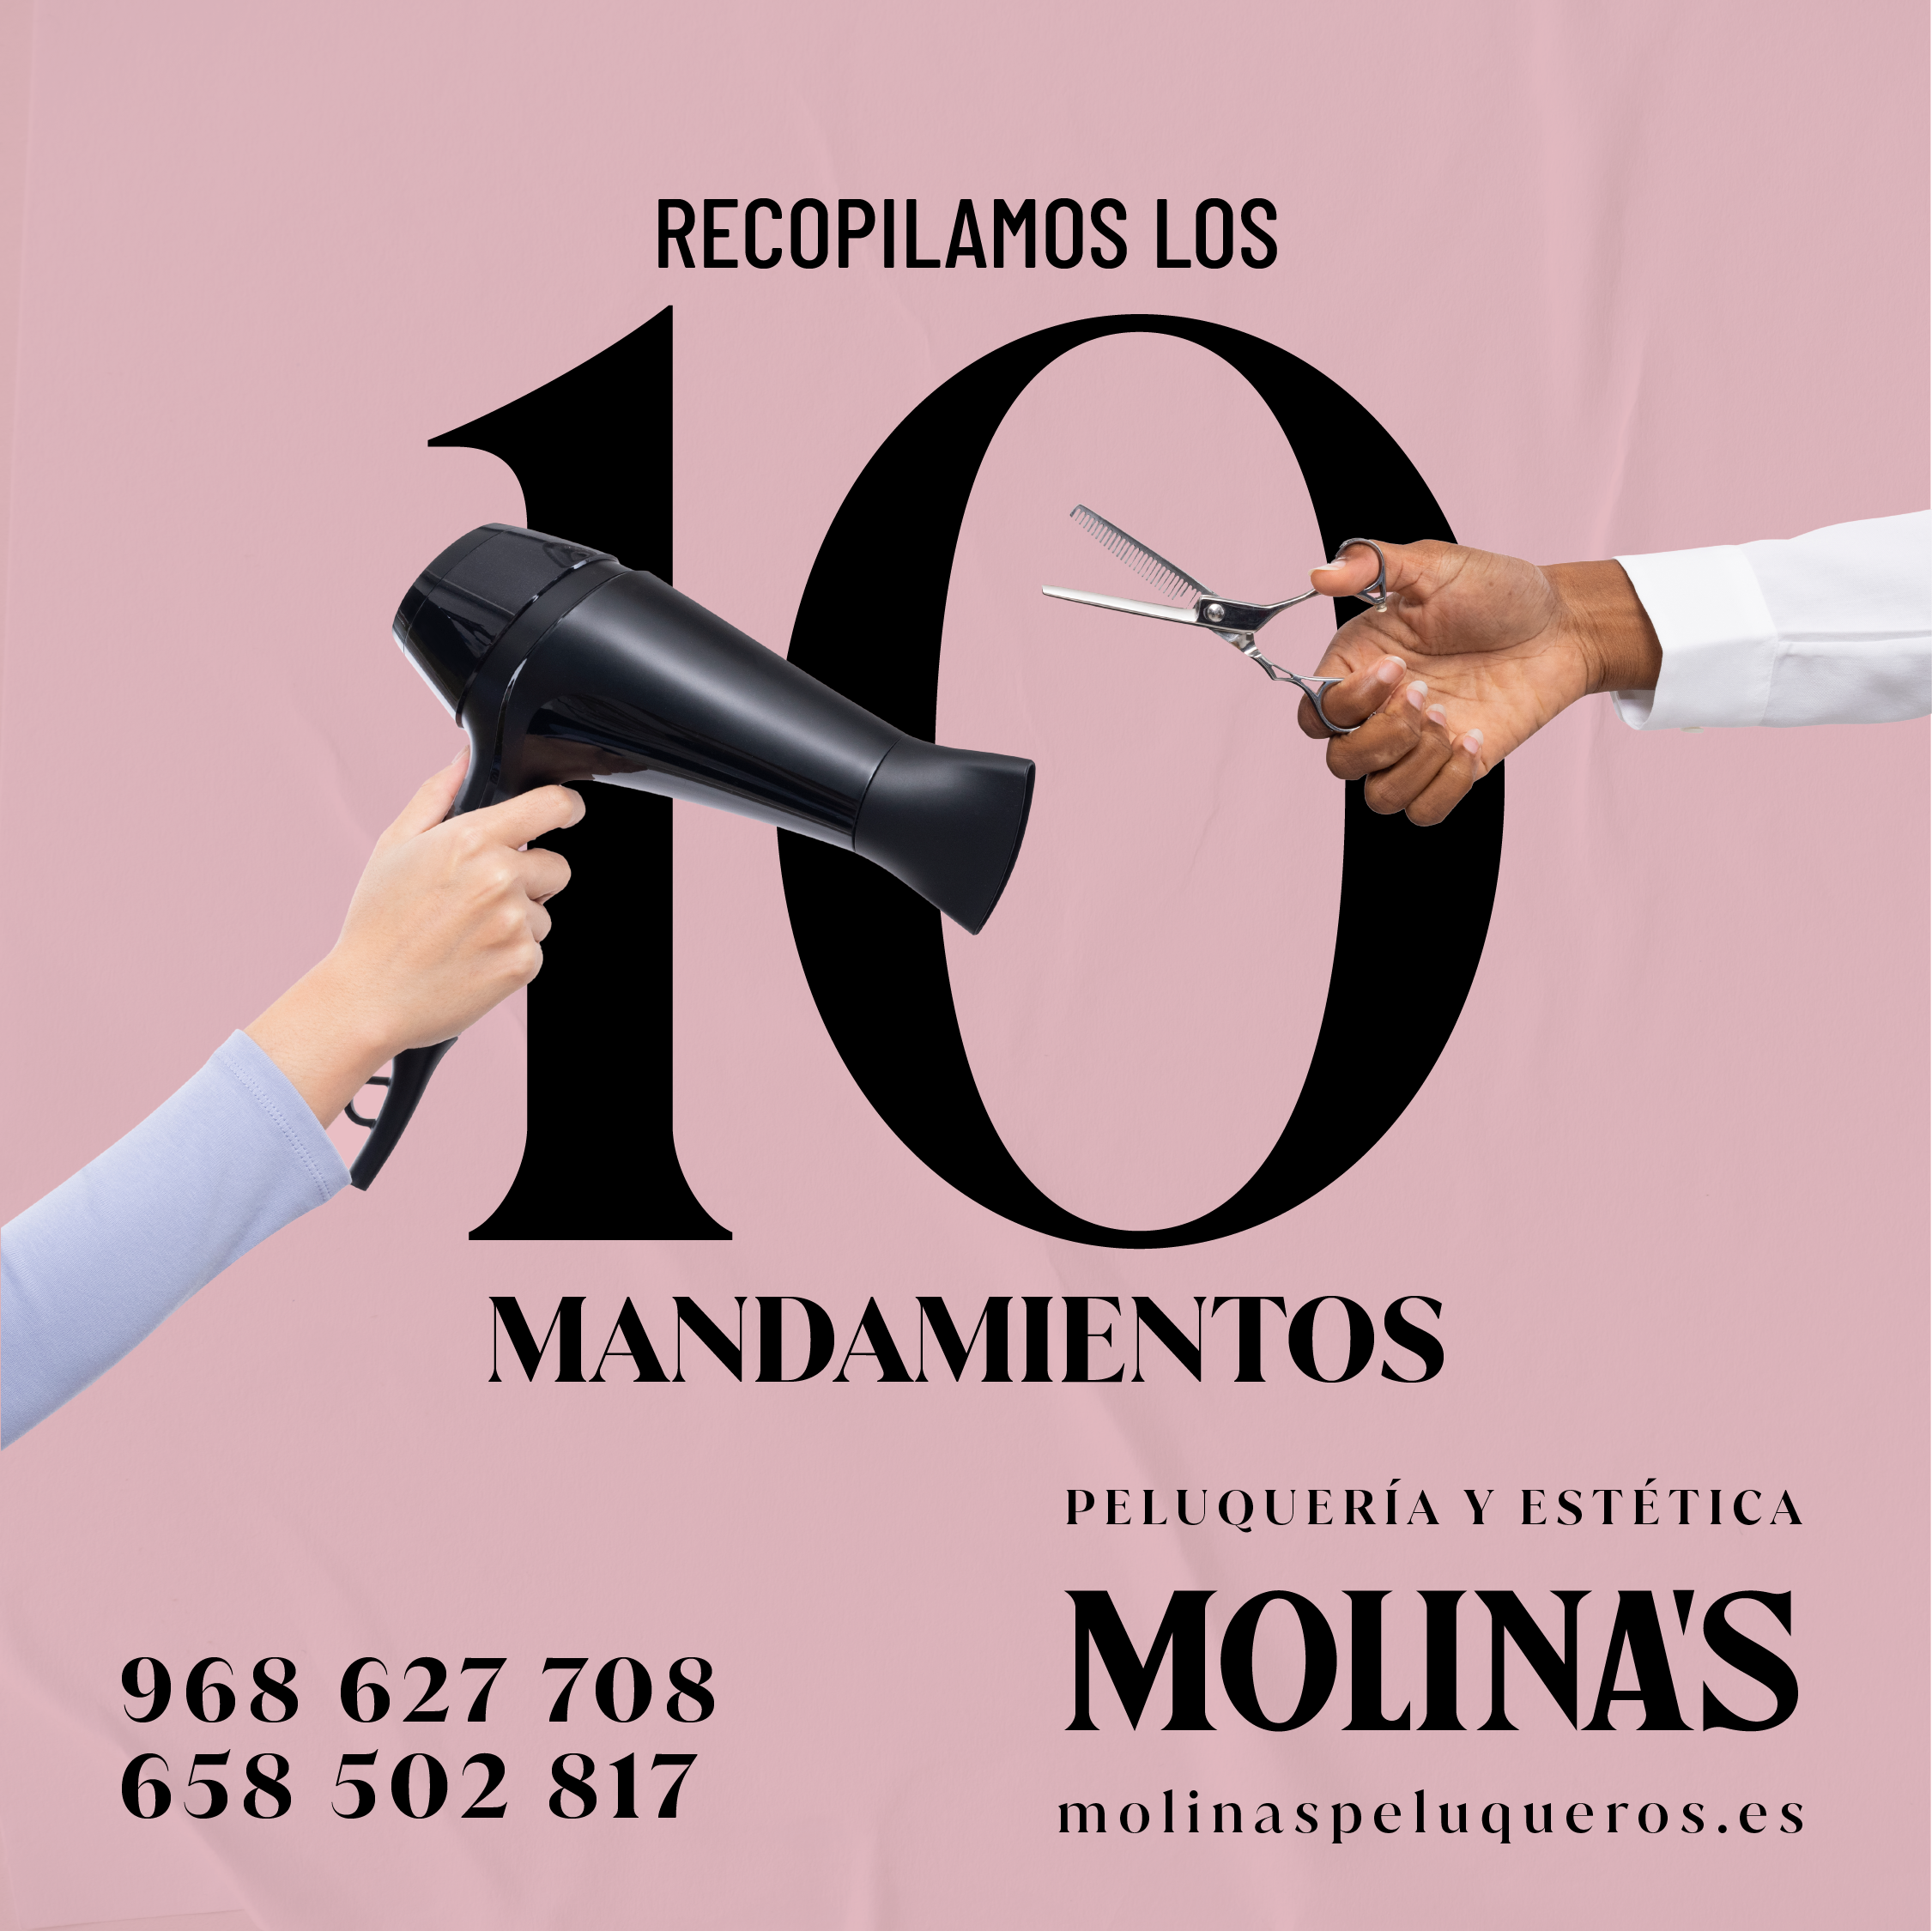 Los 10 Mandamientos de Molina’s Peluqueros